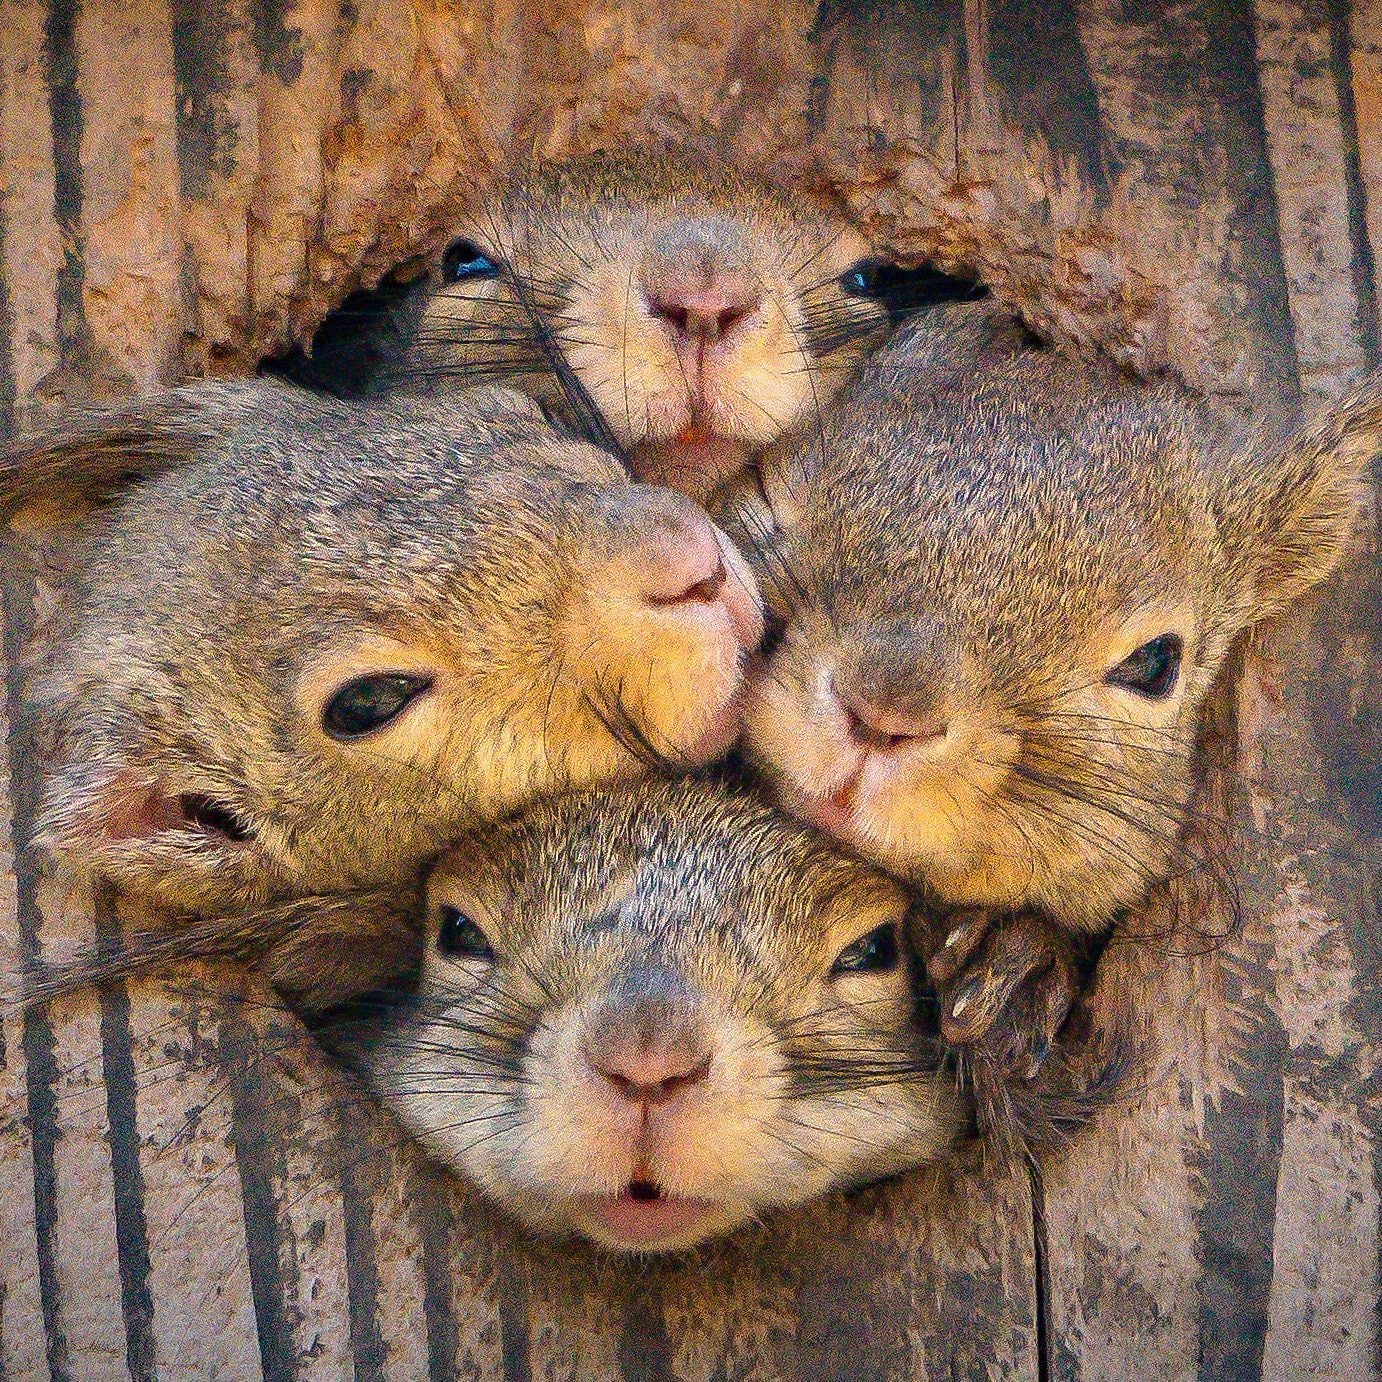 شکار تصویری جالب از سنجاب های بازیگوش